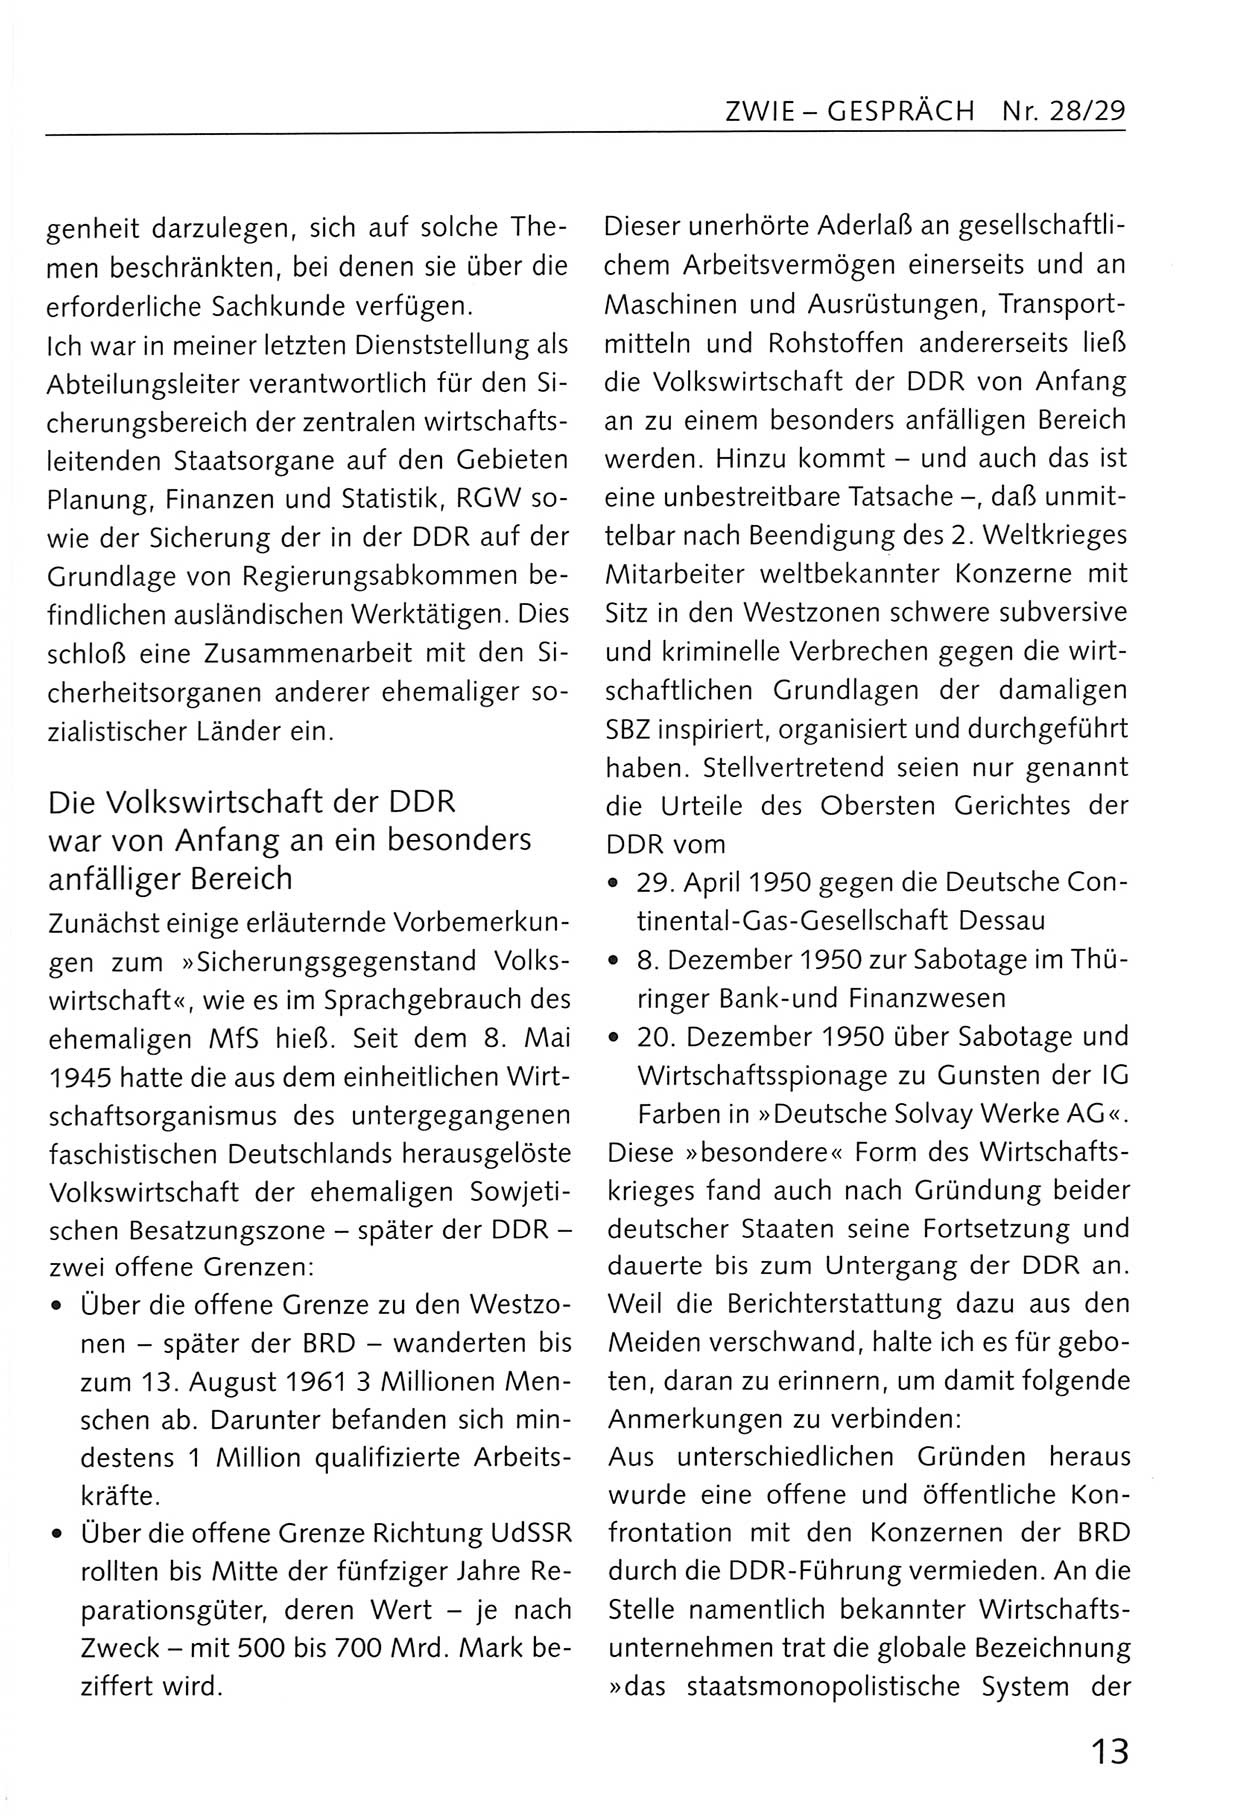 Zwie-Gespräch, Beiträge zum Umgang mit der Staatssicherheits-Vergangenheit [Deutsche Demokratische Republik (DDR)], Ausgabe Nr. 28/29, Berlin 1995, Seite 13 (Zwie-Gespr. Ausg. 28/29 1995, S. 13)